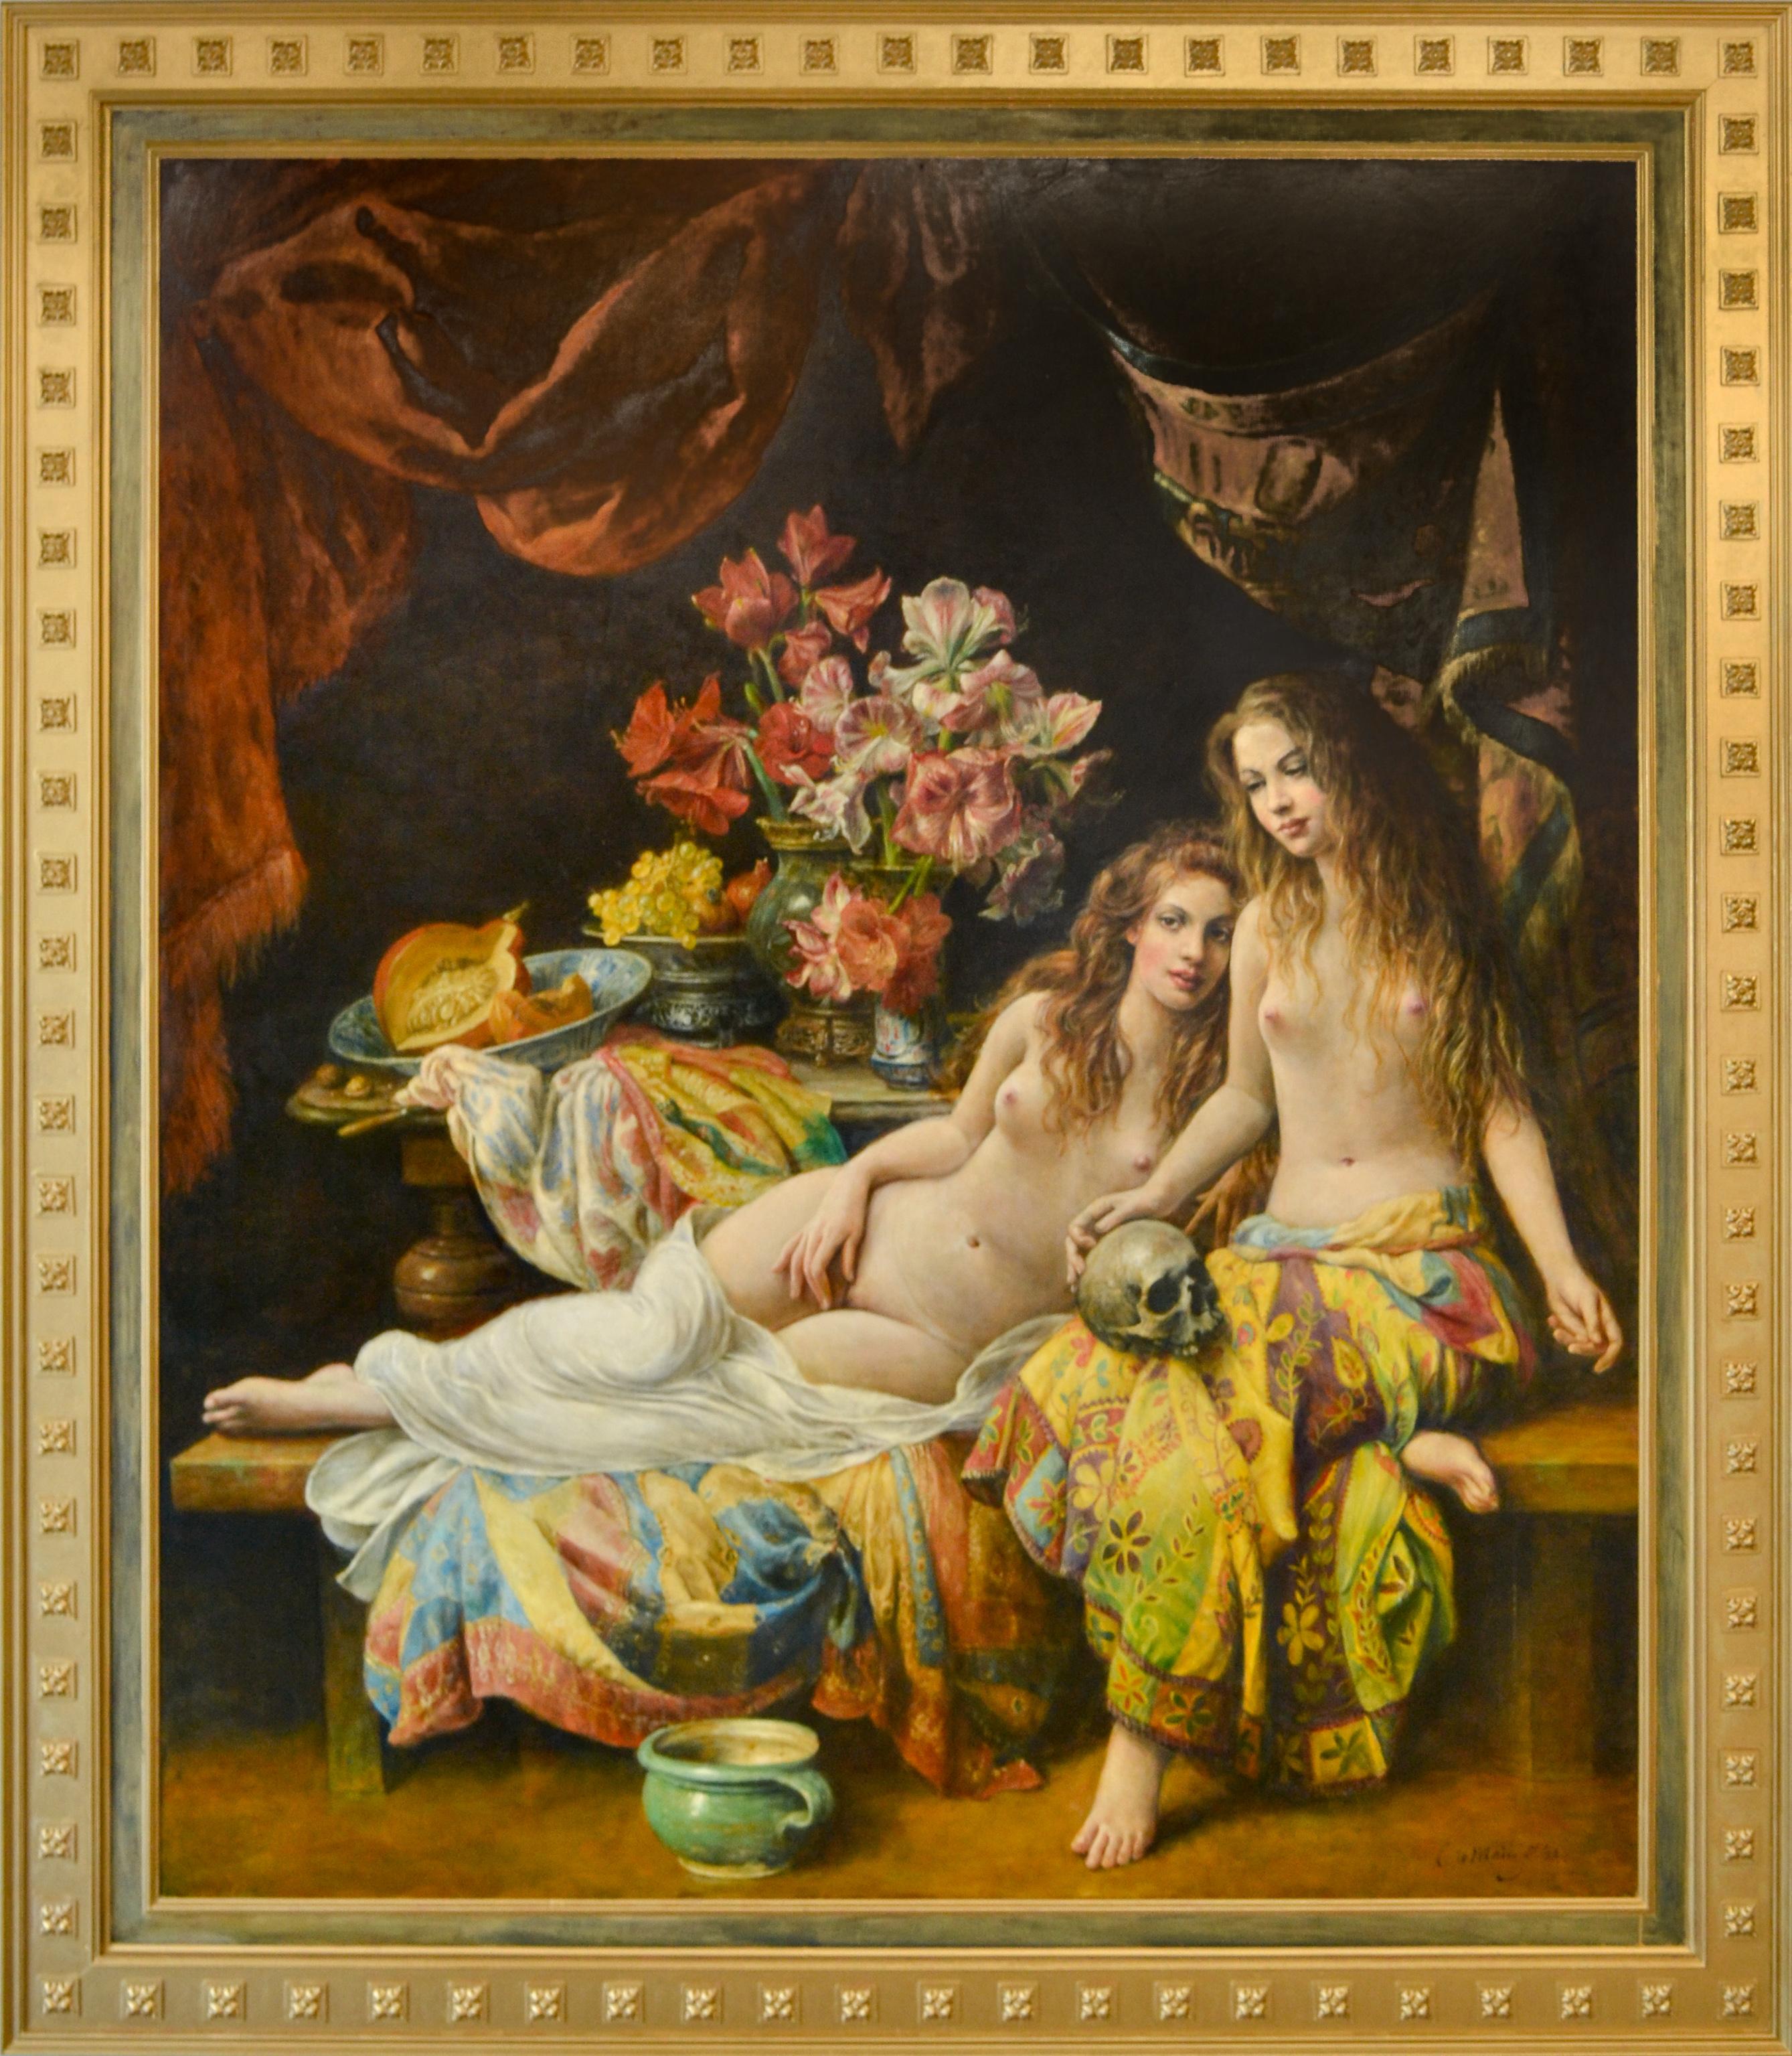 two women nude